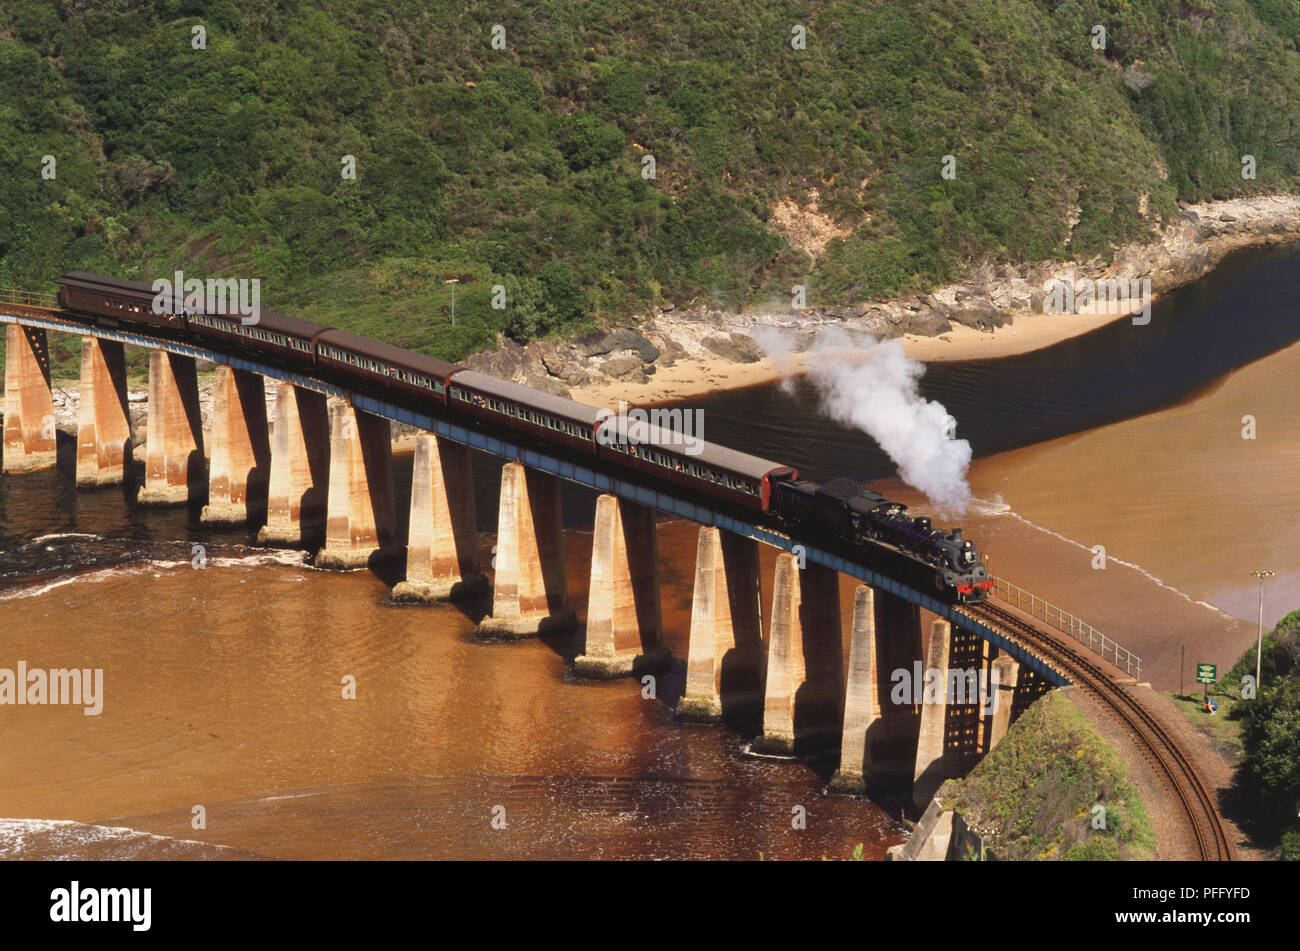 Il treno Choo-Tjoe attraversando Kaaimans River Bridge, il quale è supportato da enormi colonne di cemento. Foto Stock